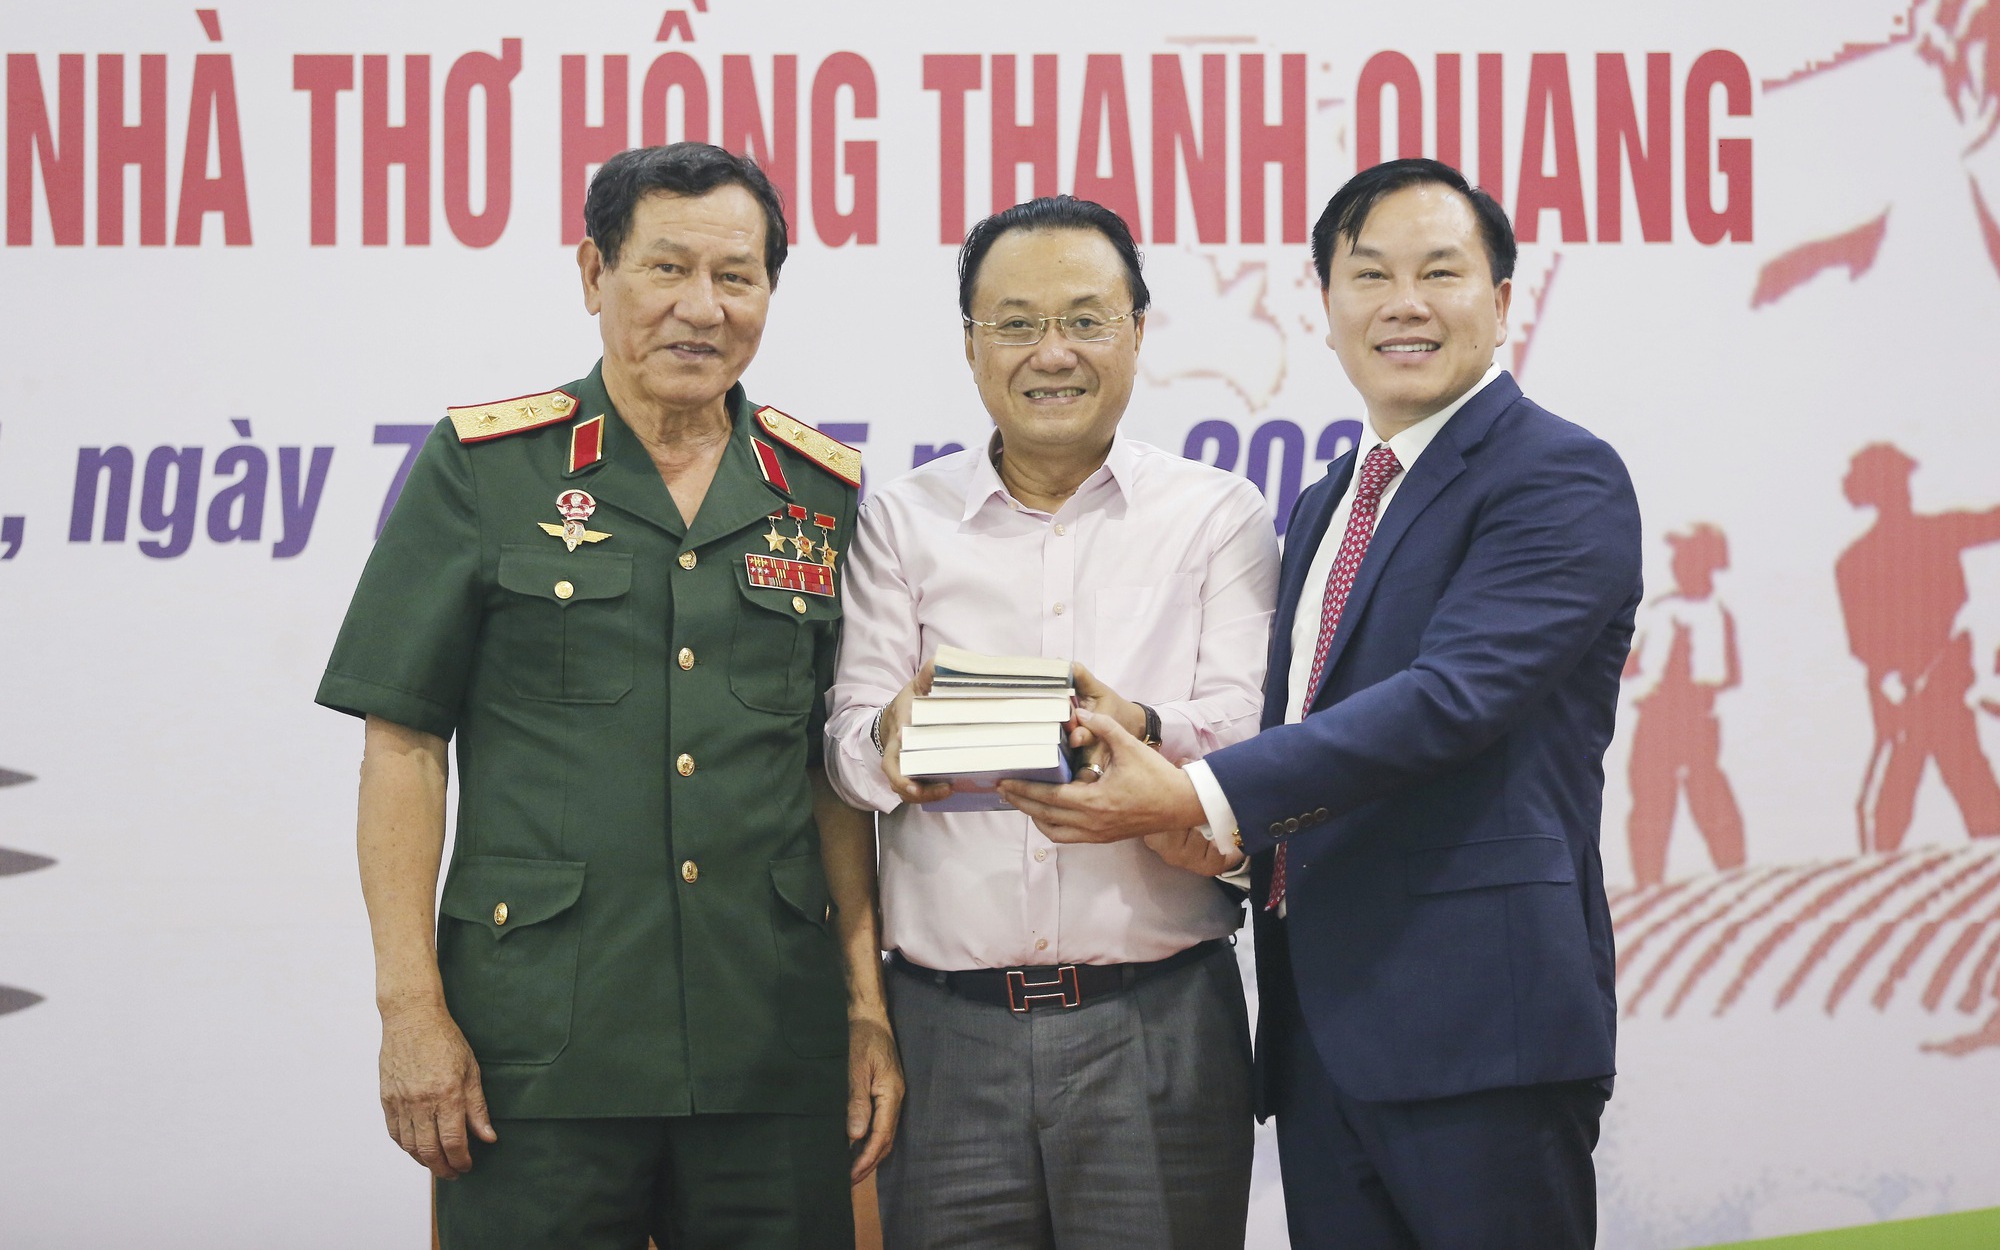 Tướng Phạm Tuân và Nhà thơ Hồng Thanh Quang 